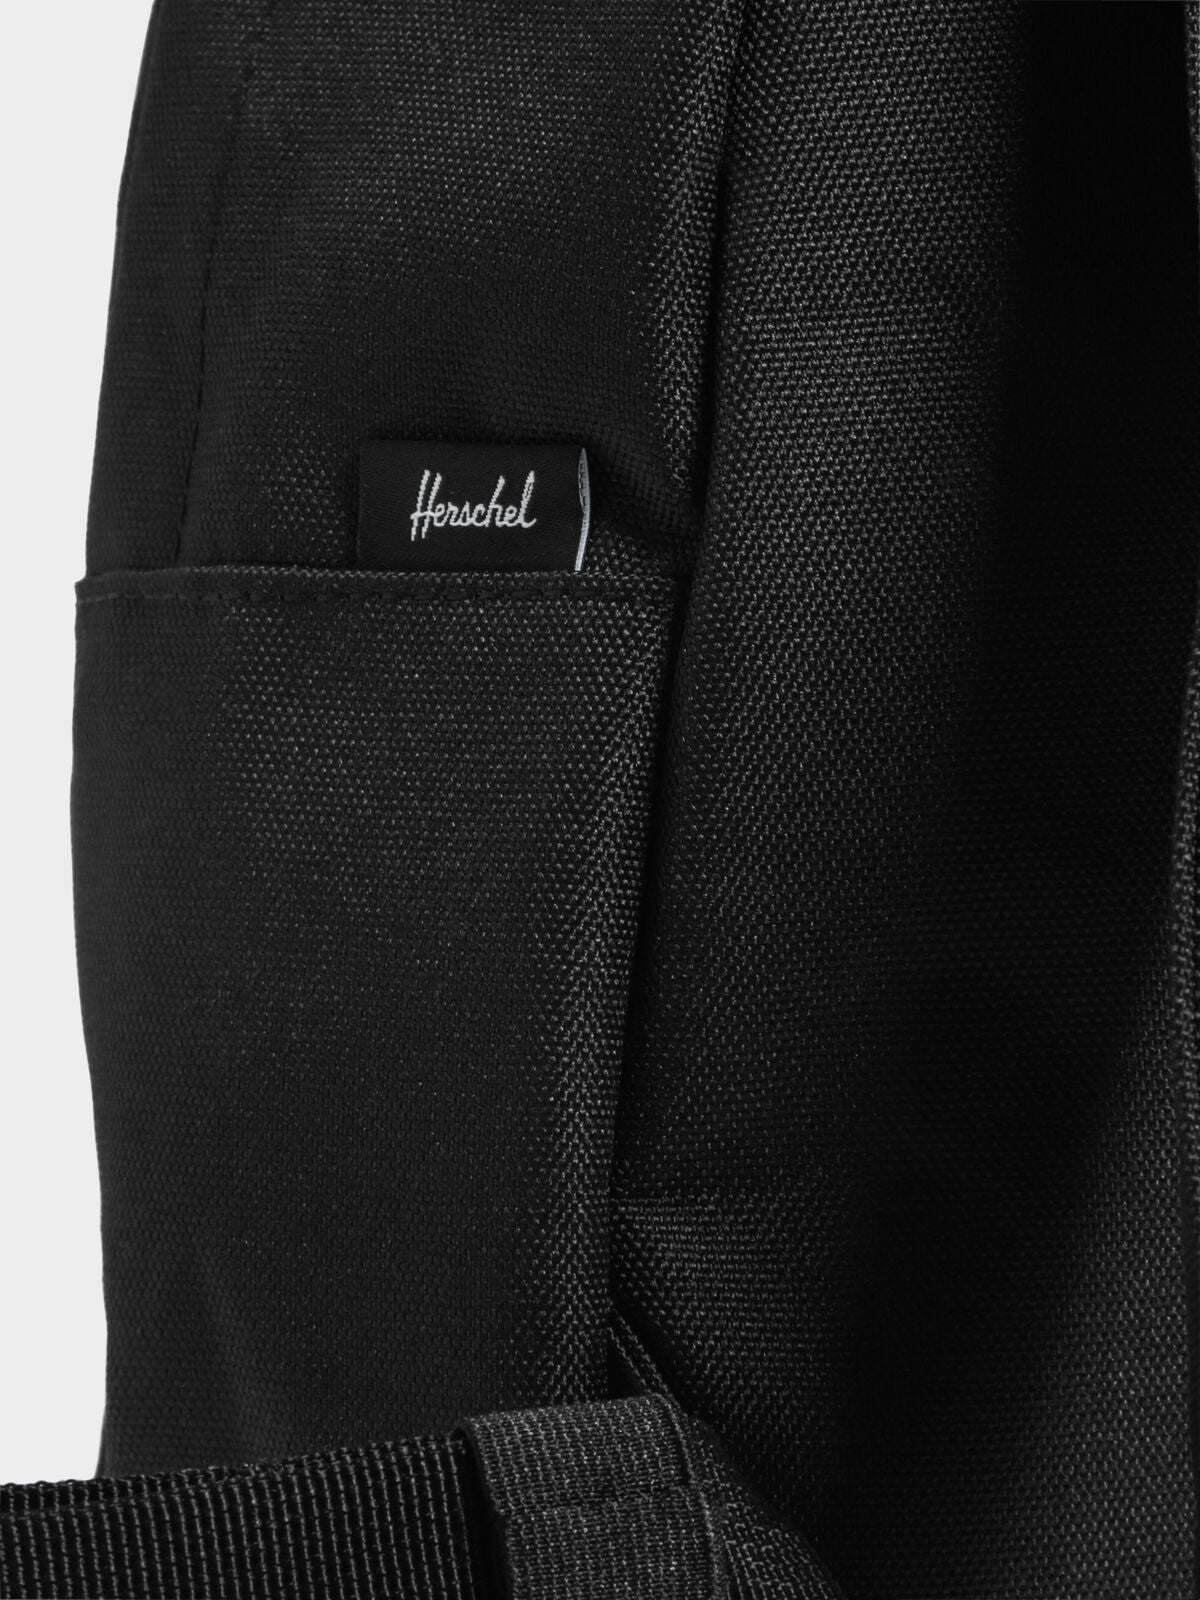 Heritage Mini Backpack in Black